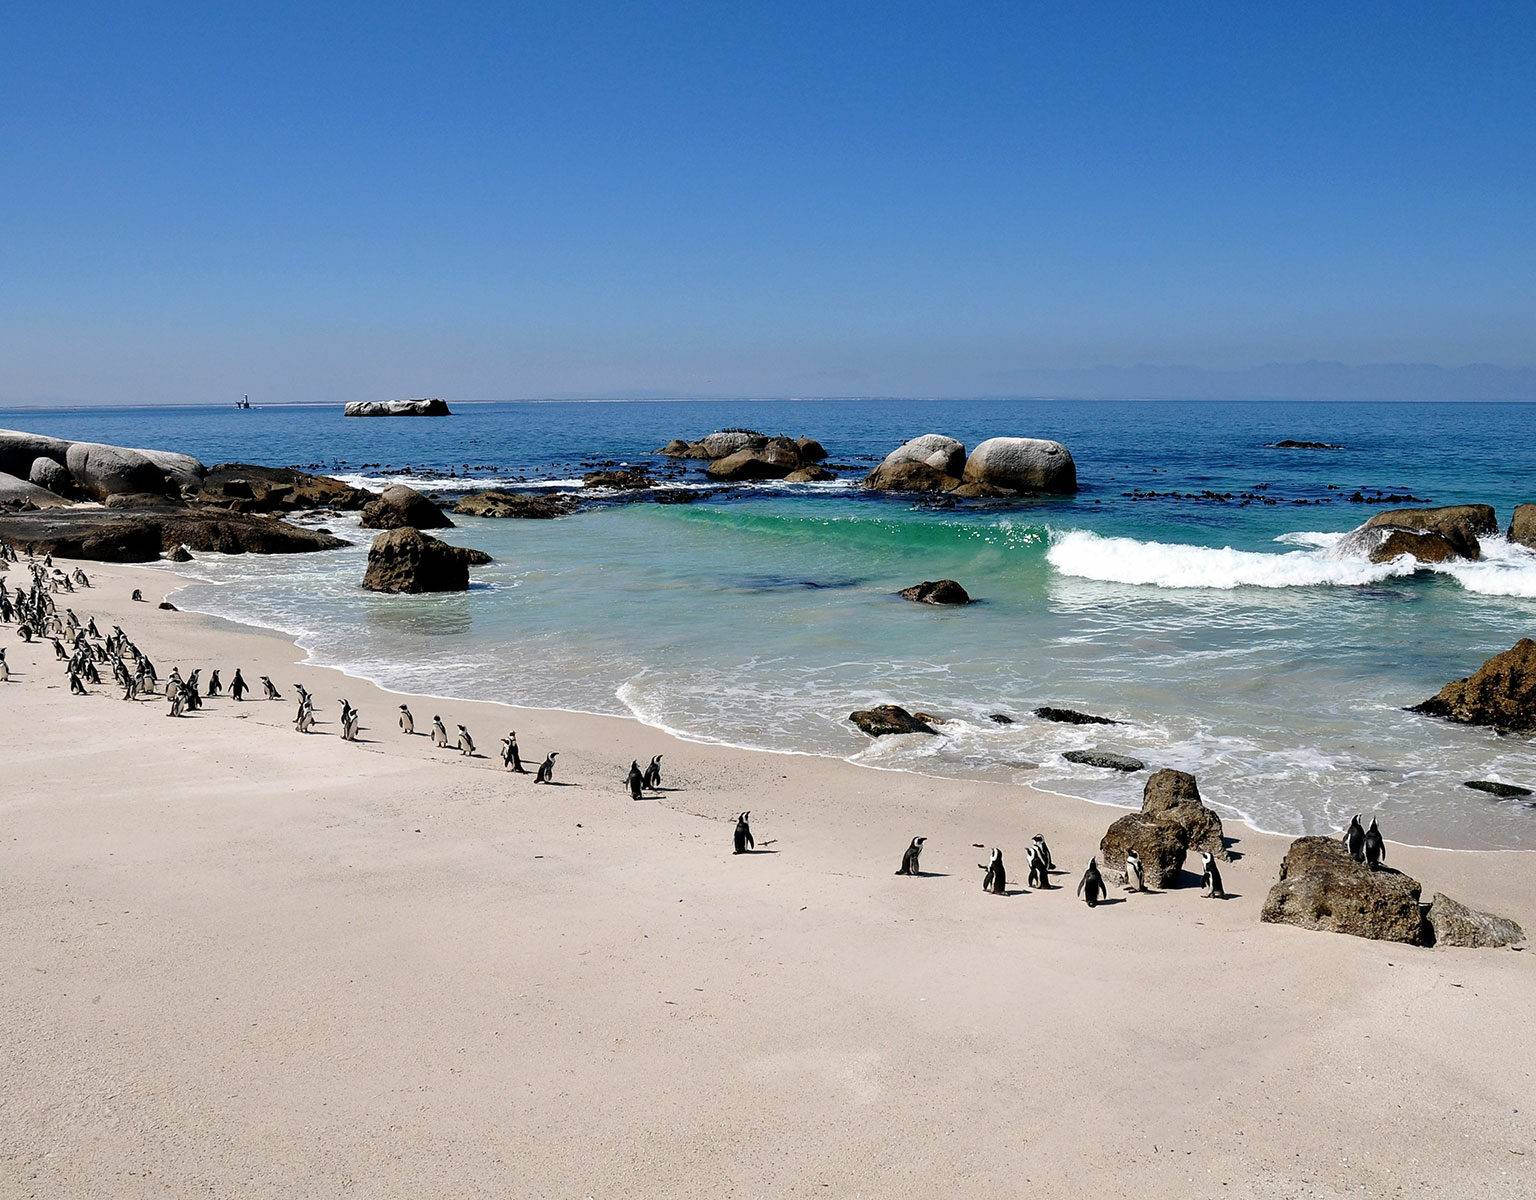 Pinguine in ihrer natürlichen Umgebung am Strand zu erleben, ist ein Highlight auf jeder Reise durch Südafrika.